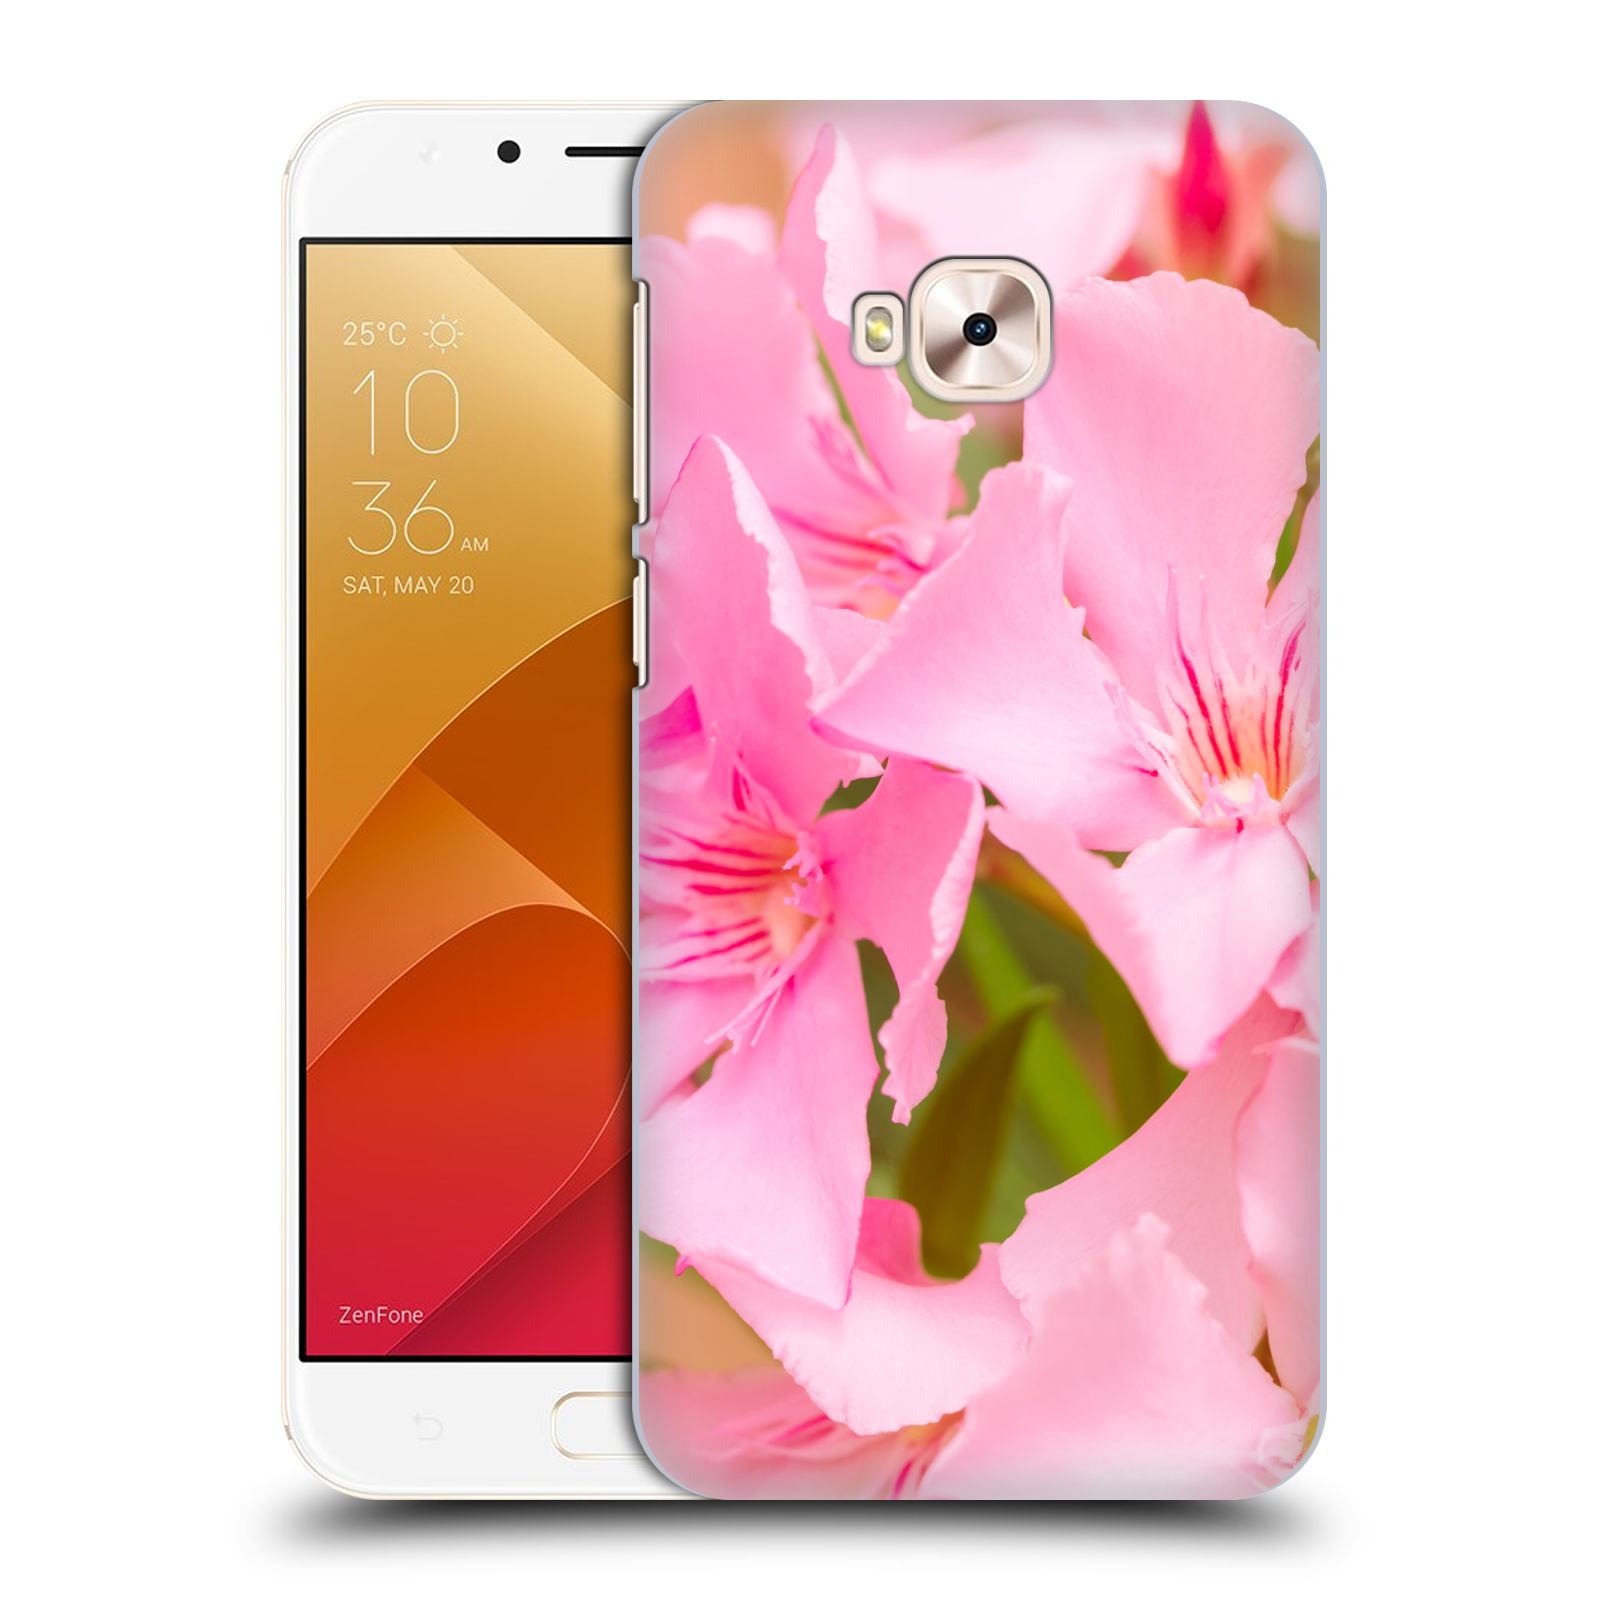 Zadní obal pro mobil Asus Zenfone 4 Selfie Pro ZD552KL - HEAD CASE - Beli - Růžové květy květina